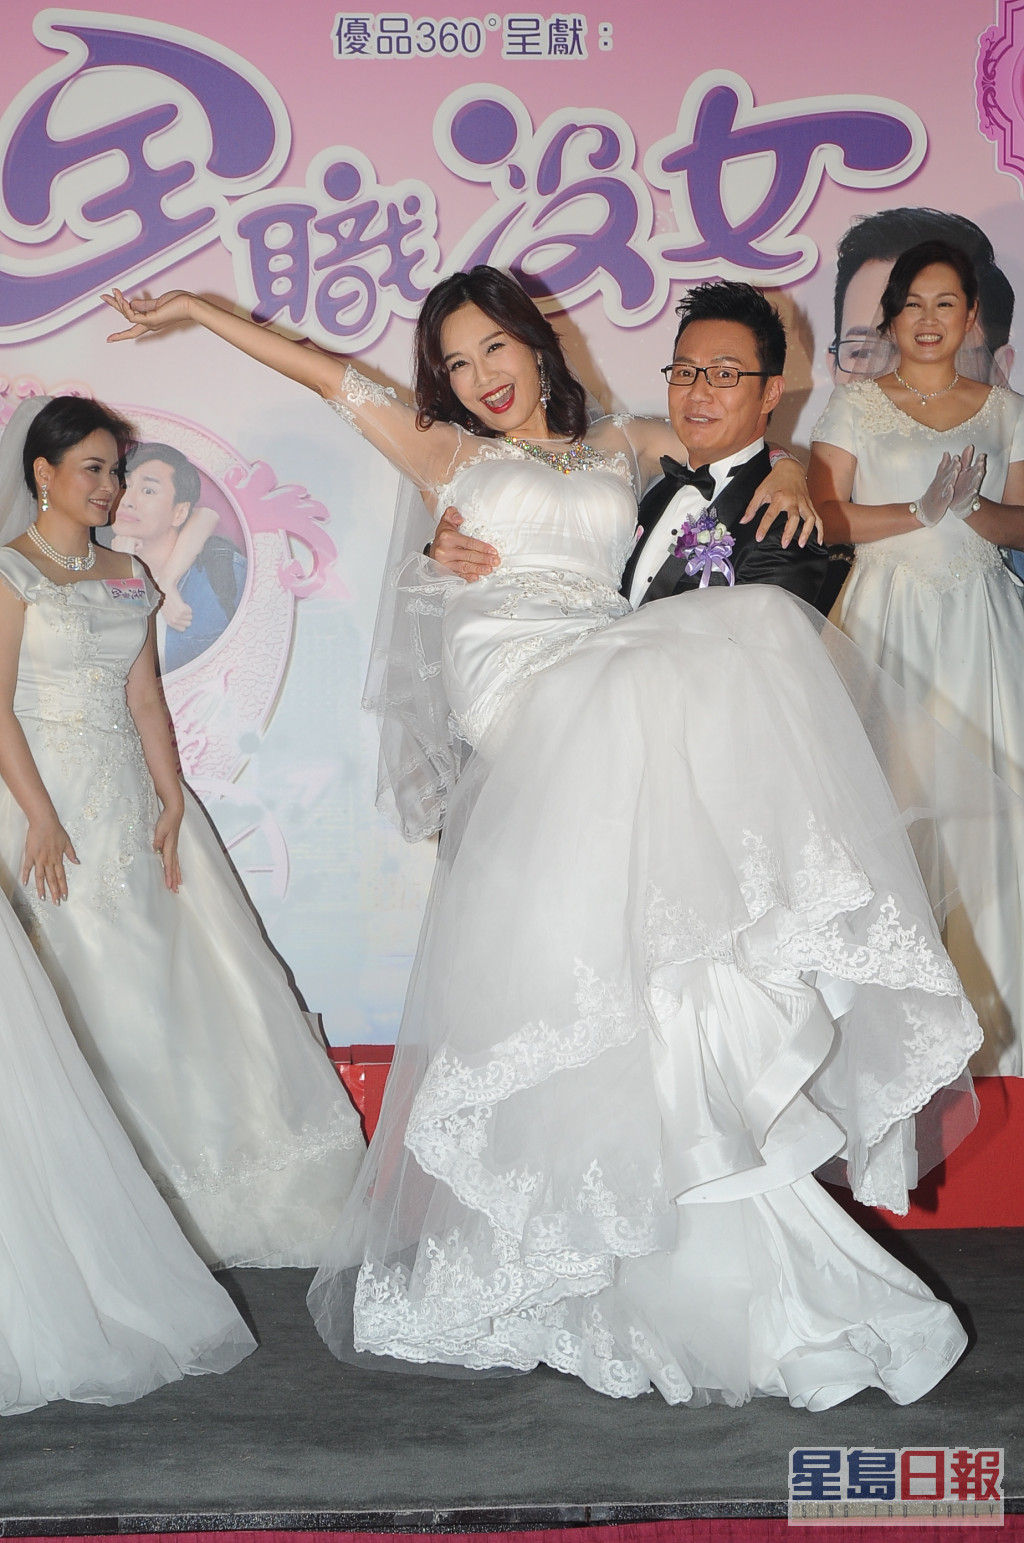 2017年陈松伶拍摄无綫剧《全职没女》，令她再受香港观众关注。